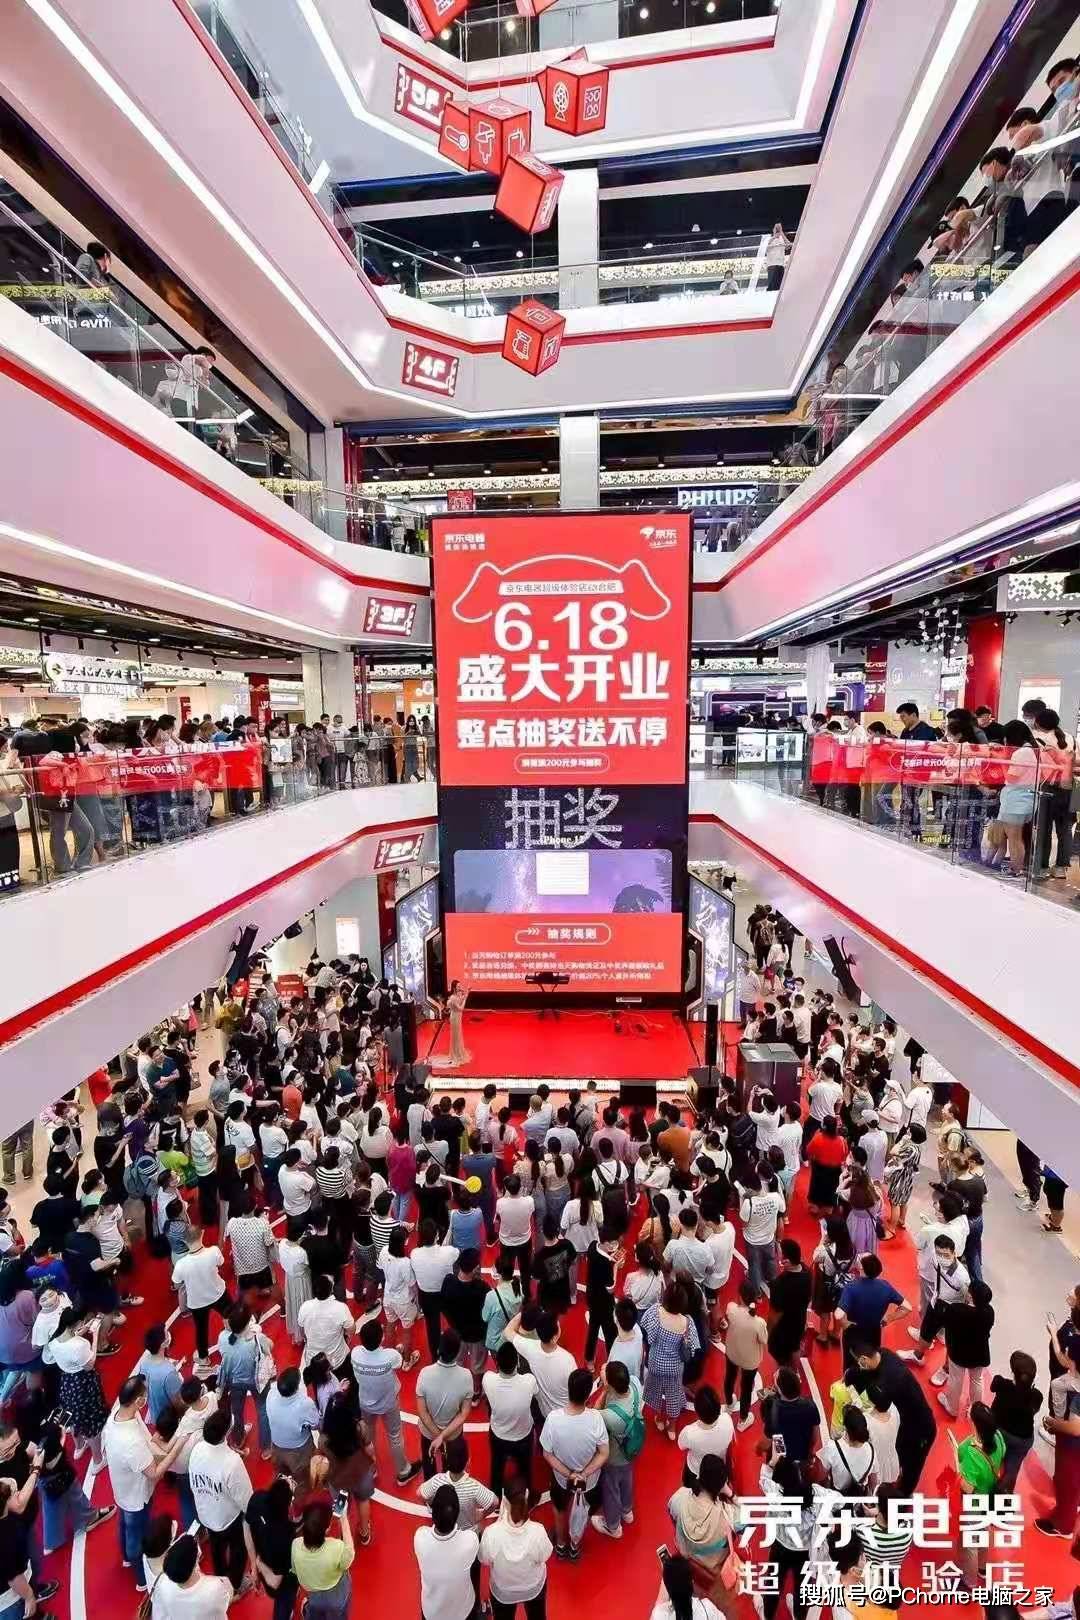 京东超体合肥店客流量超120万成交额超16亿